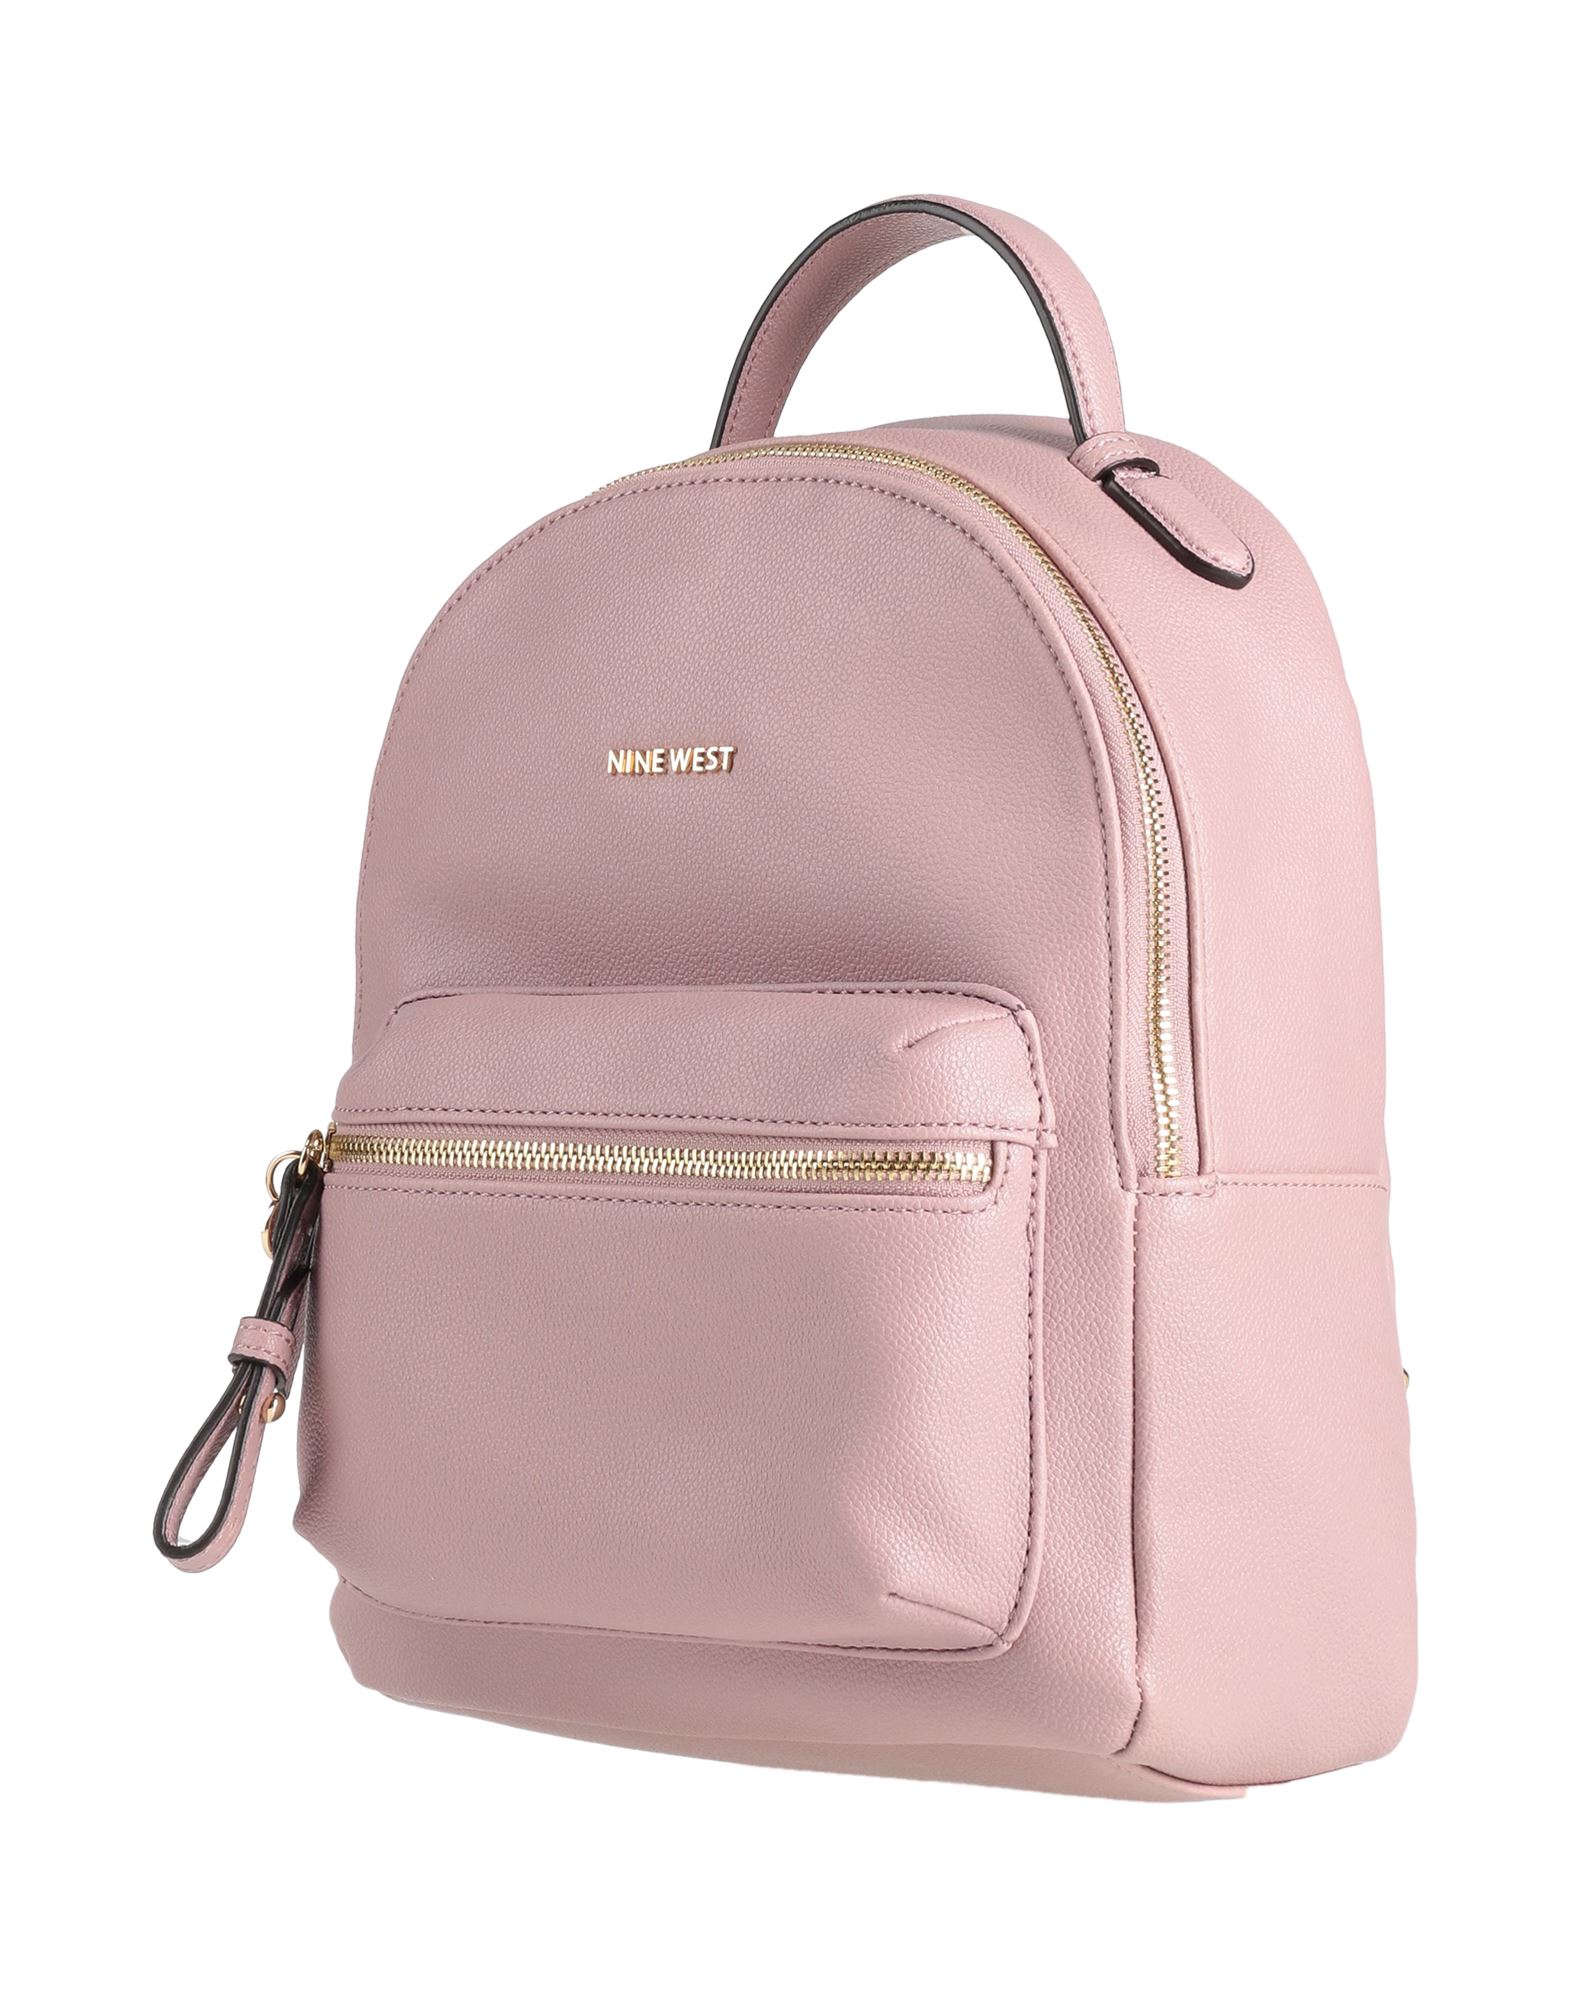 Nine West Backpacks In Pastel Pink